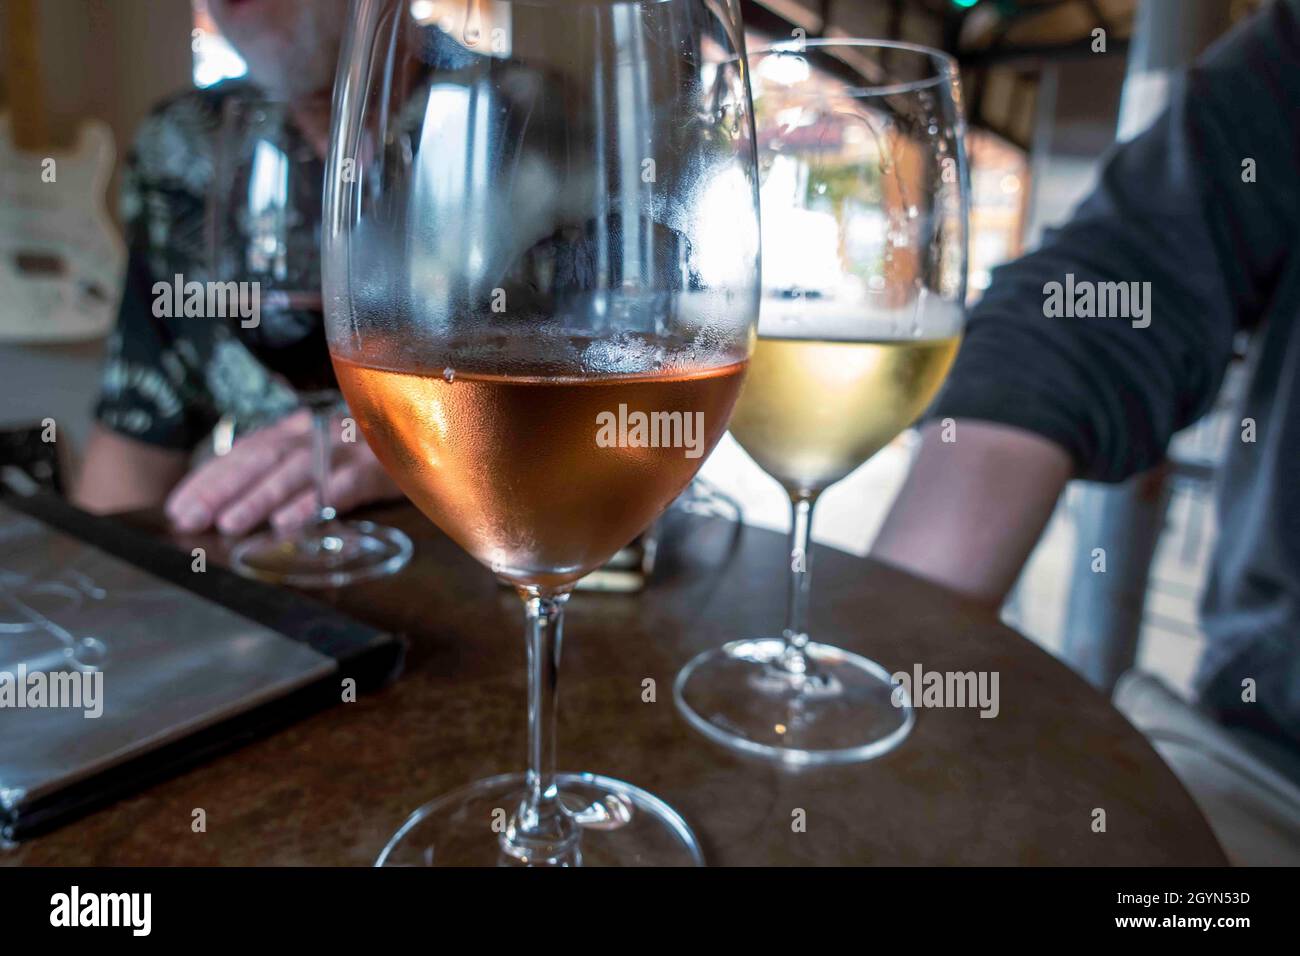 Nahaufnahme konzentriert euch auf ein Glas Rosé- und Weißwein an einem Tisch, an dem sich Freunde und Familie zu Weinproben versammelt haben Stockfoto